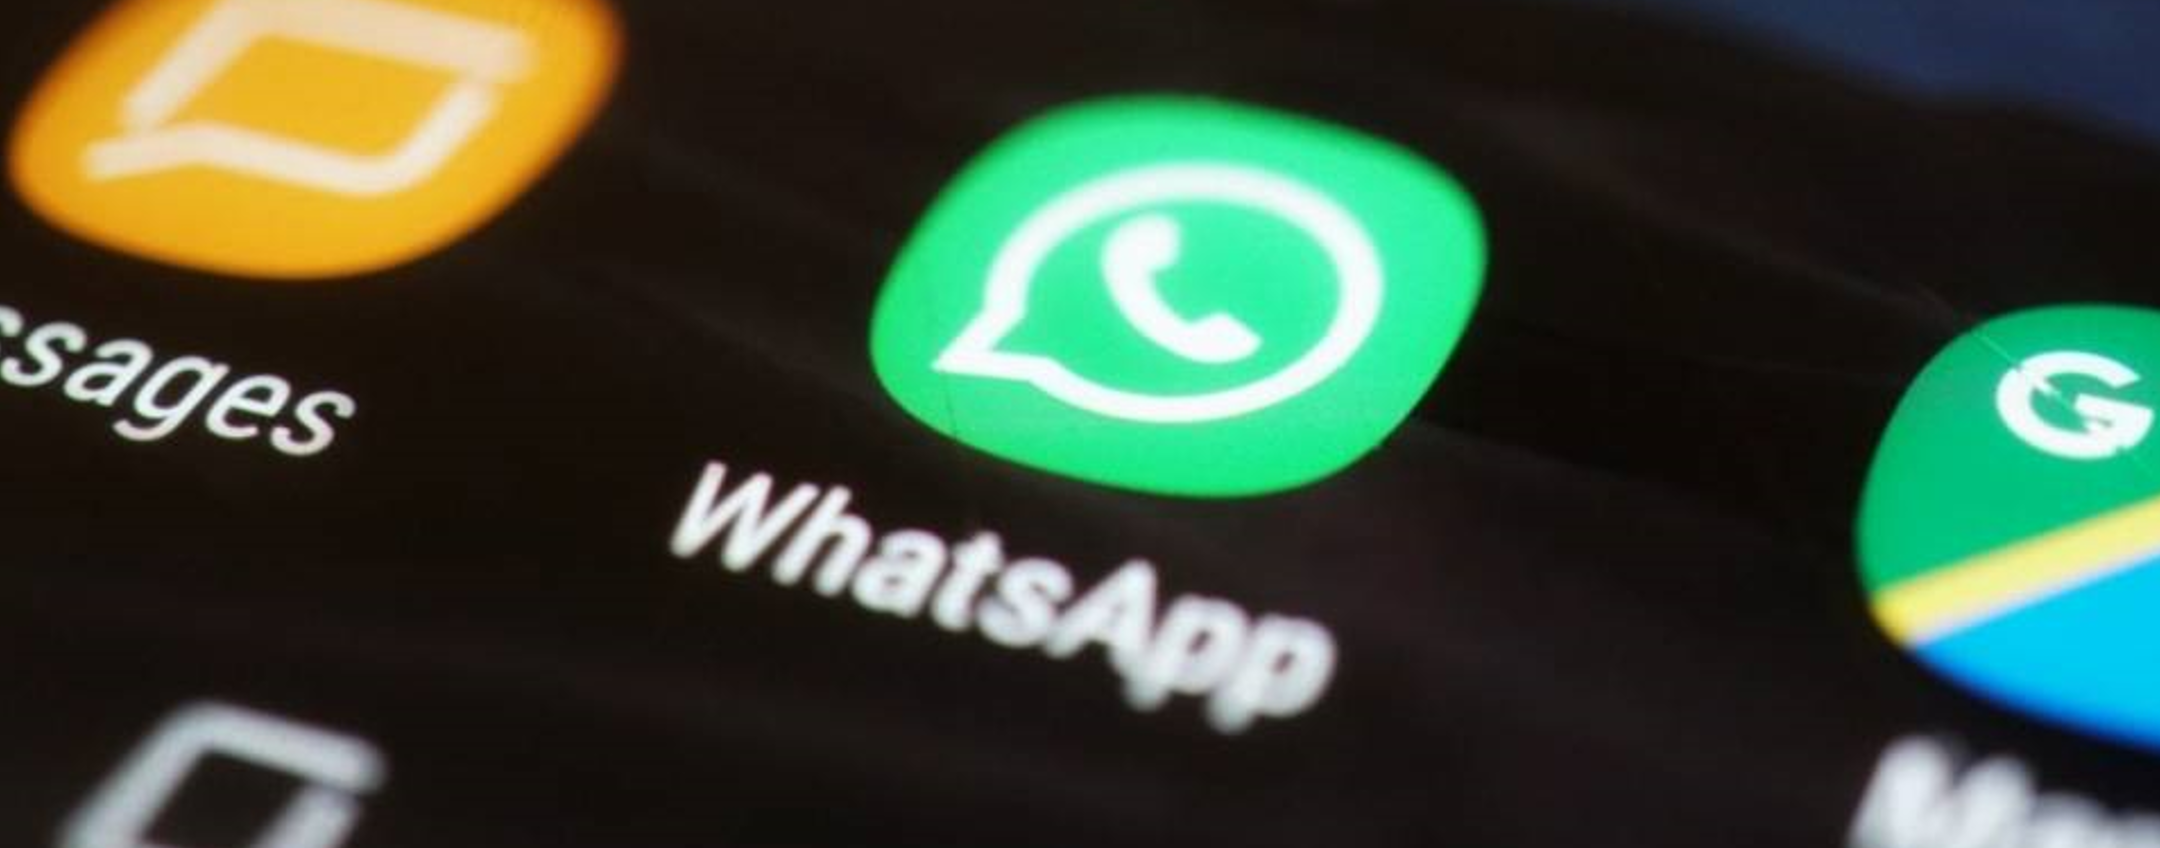 WhatsApp: gradite novità per i link negli aggiornamenti di stato